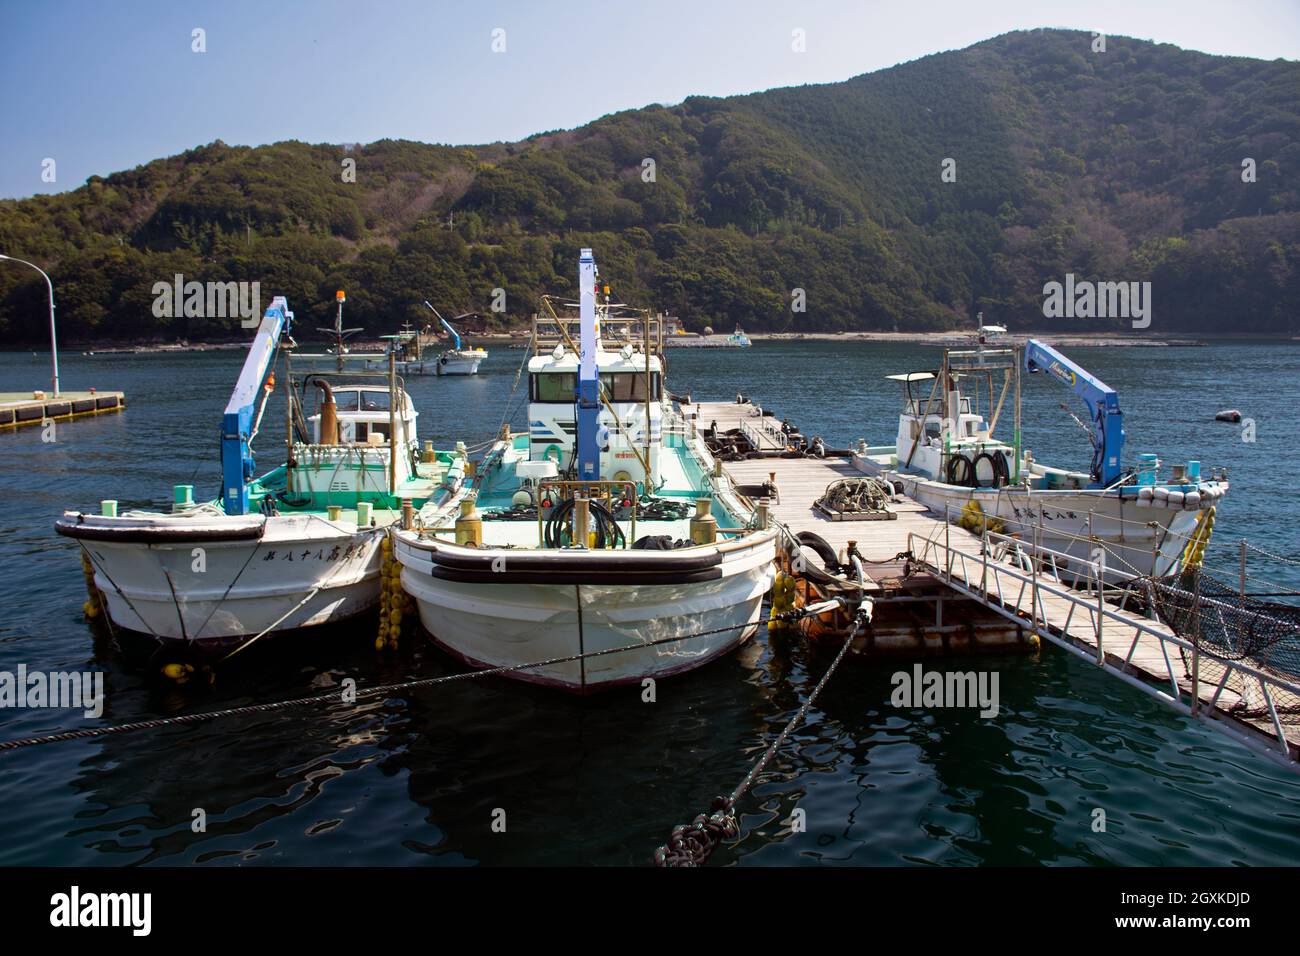 Fishing boats at Ainan, Japan Stock Photo